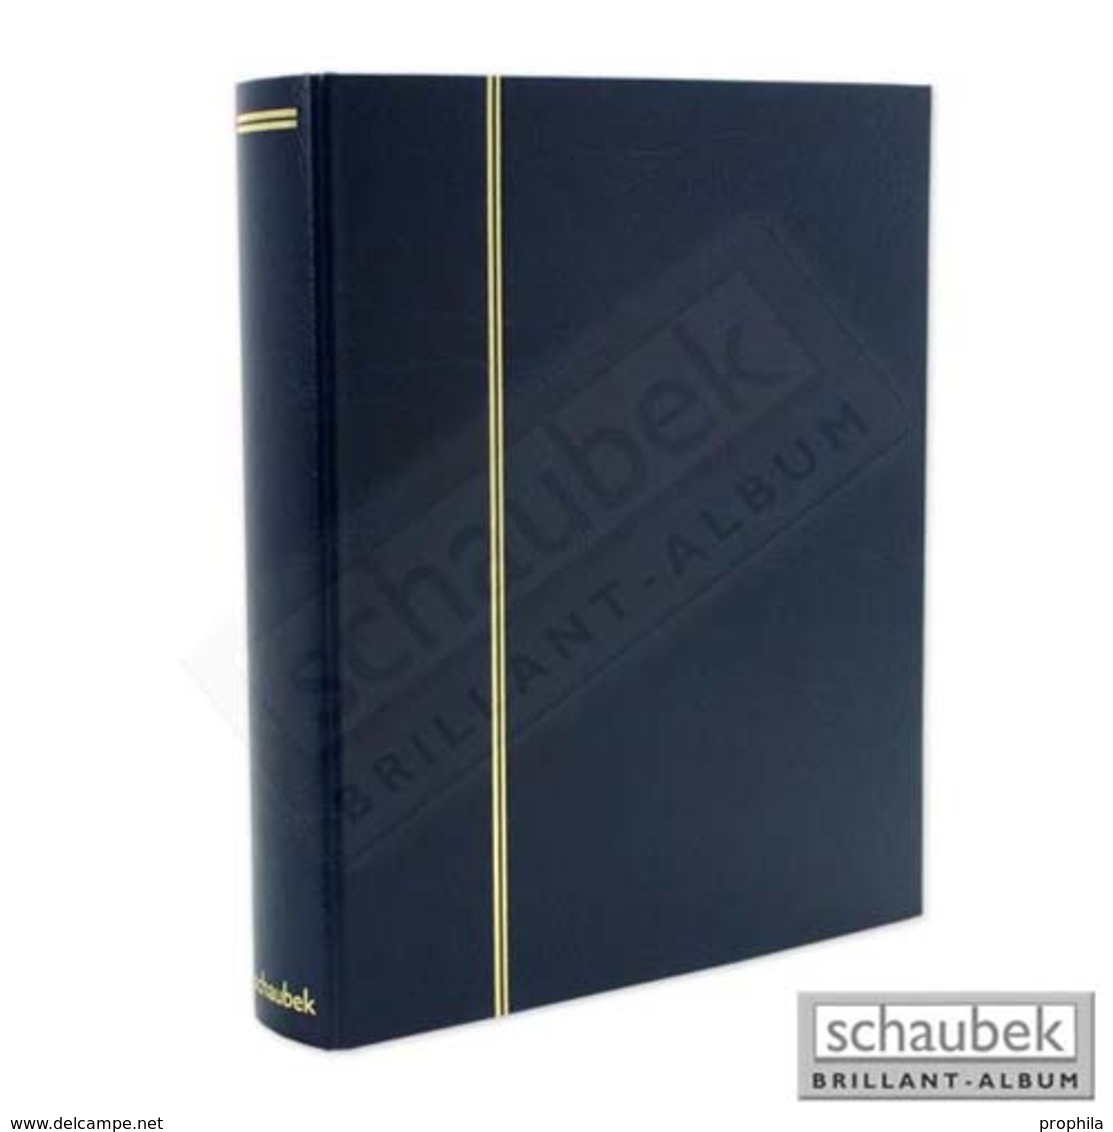 Schaubek Rb-1113 Universal-Folienblattalbum Attaché Für ETB Mit 20 Blatt Fo-111 Für Formate Bis DIN A4 Blau - Large Format, Black Pages